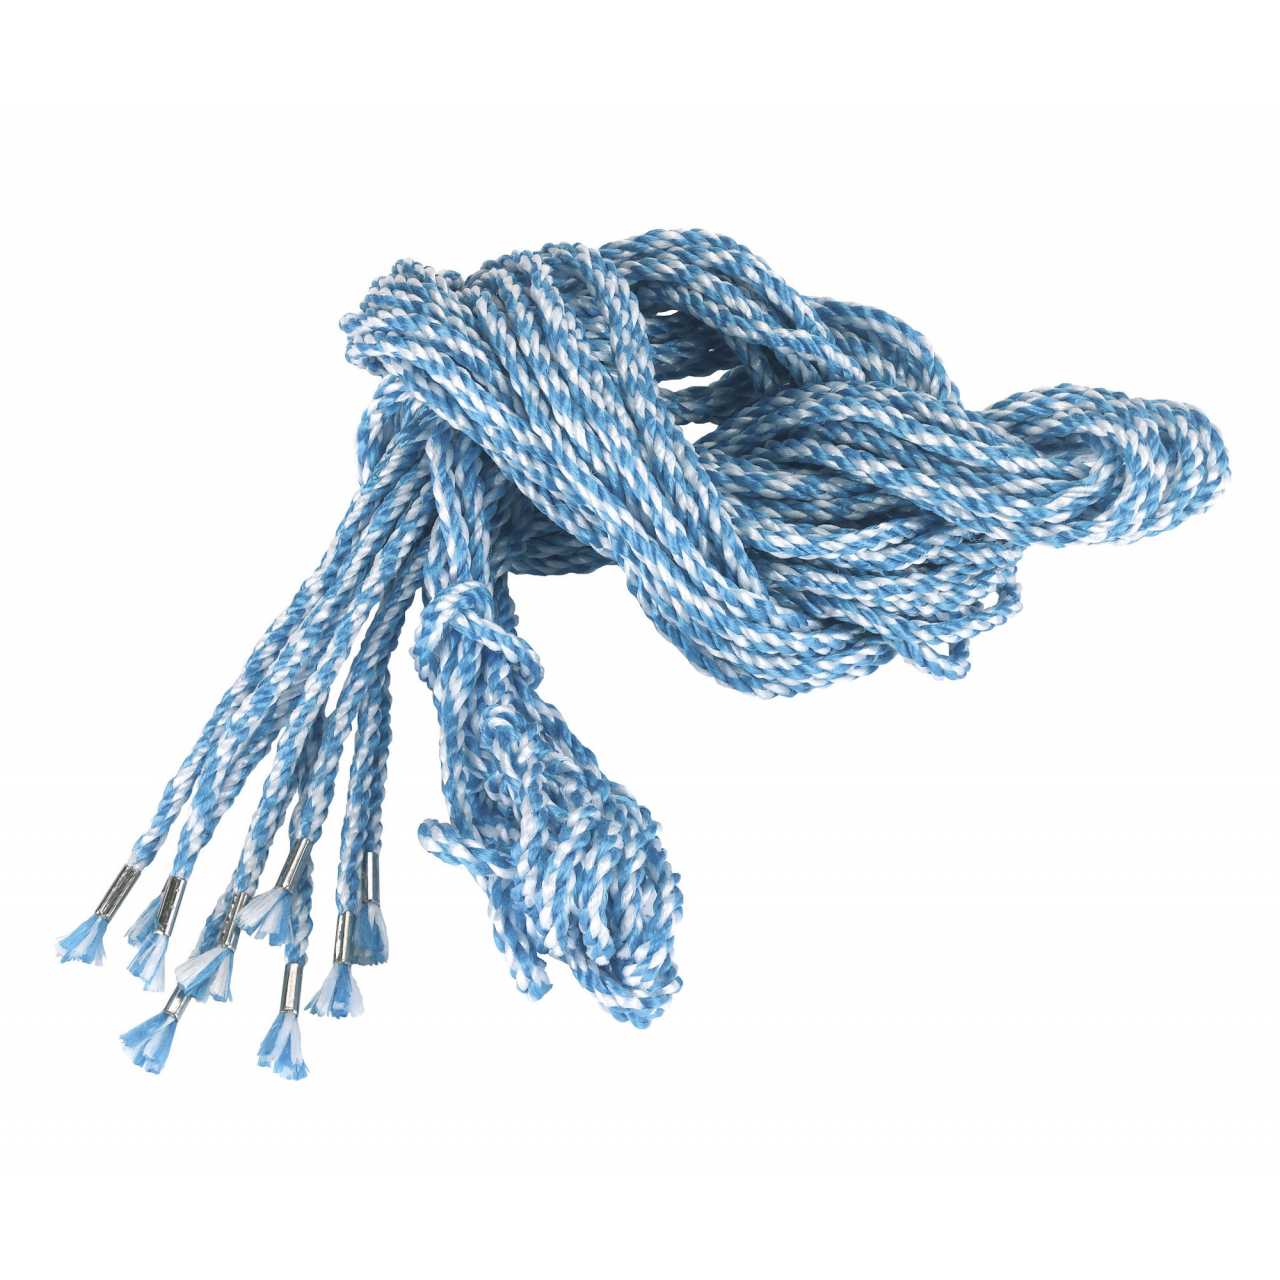 Állás kötél - kék/fehér, 2,5m, 10 db